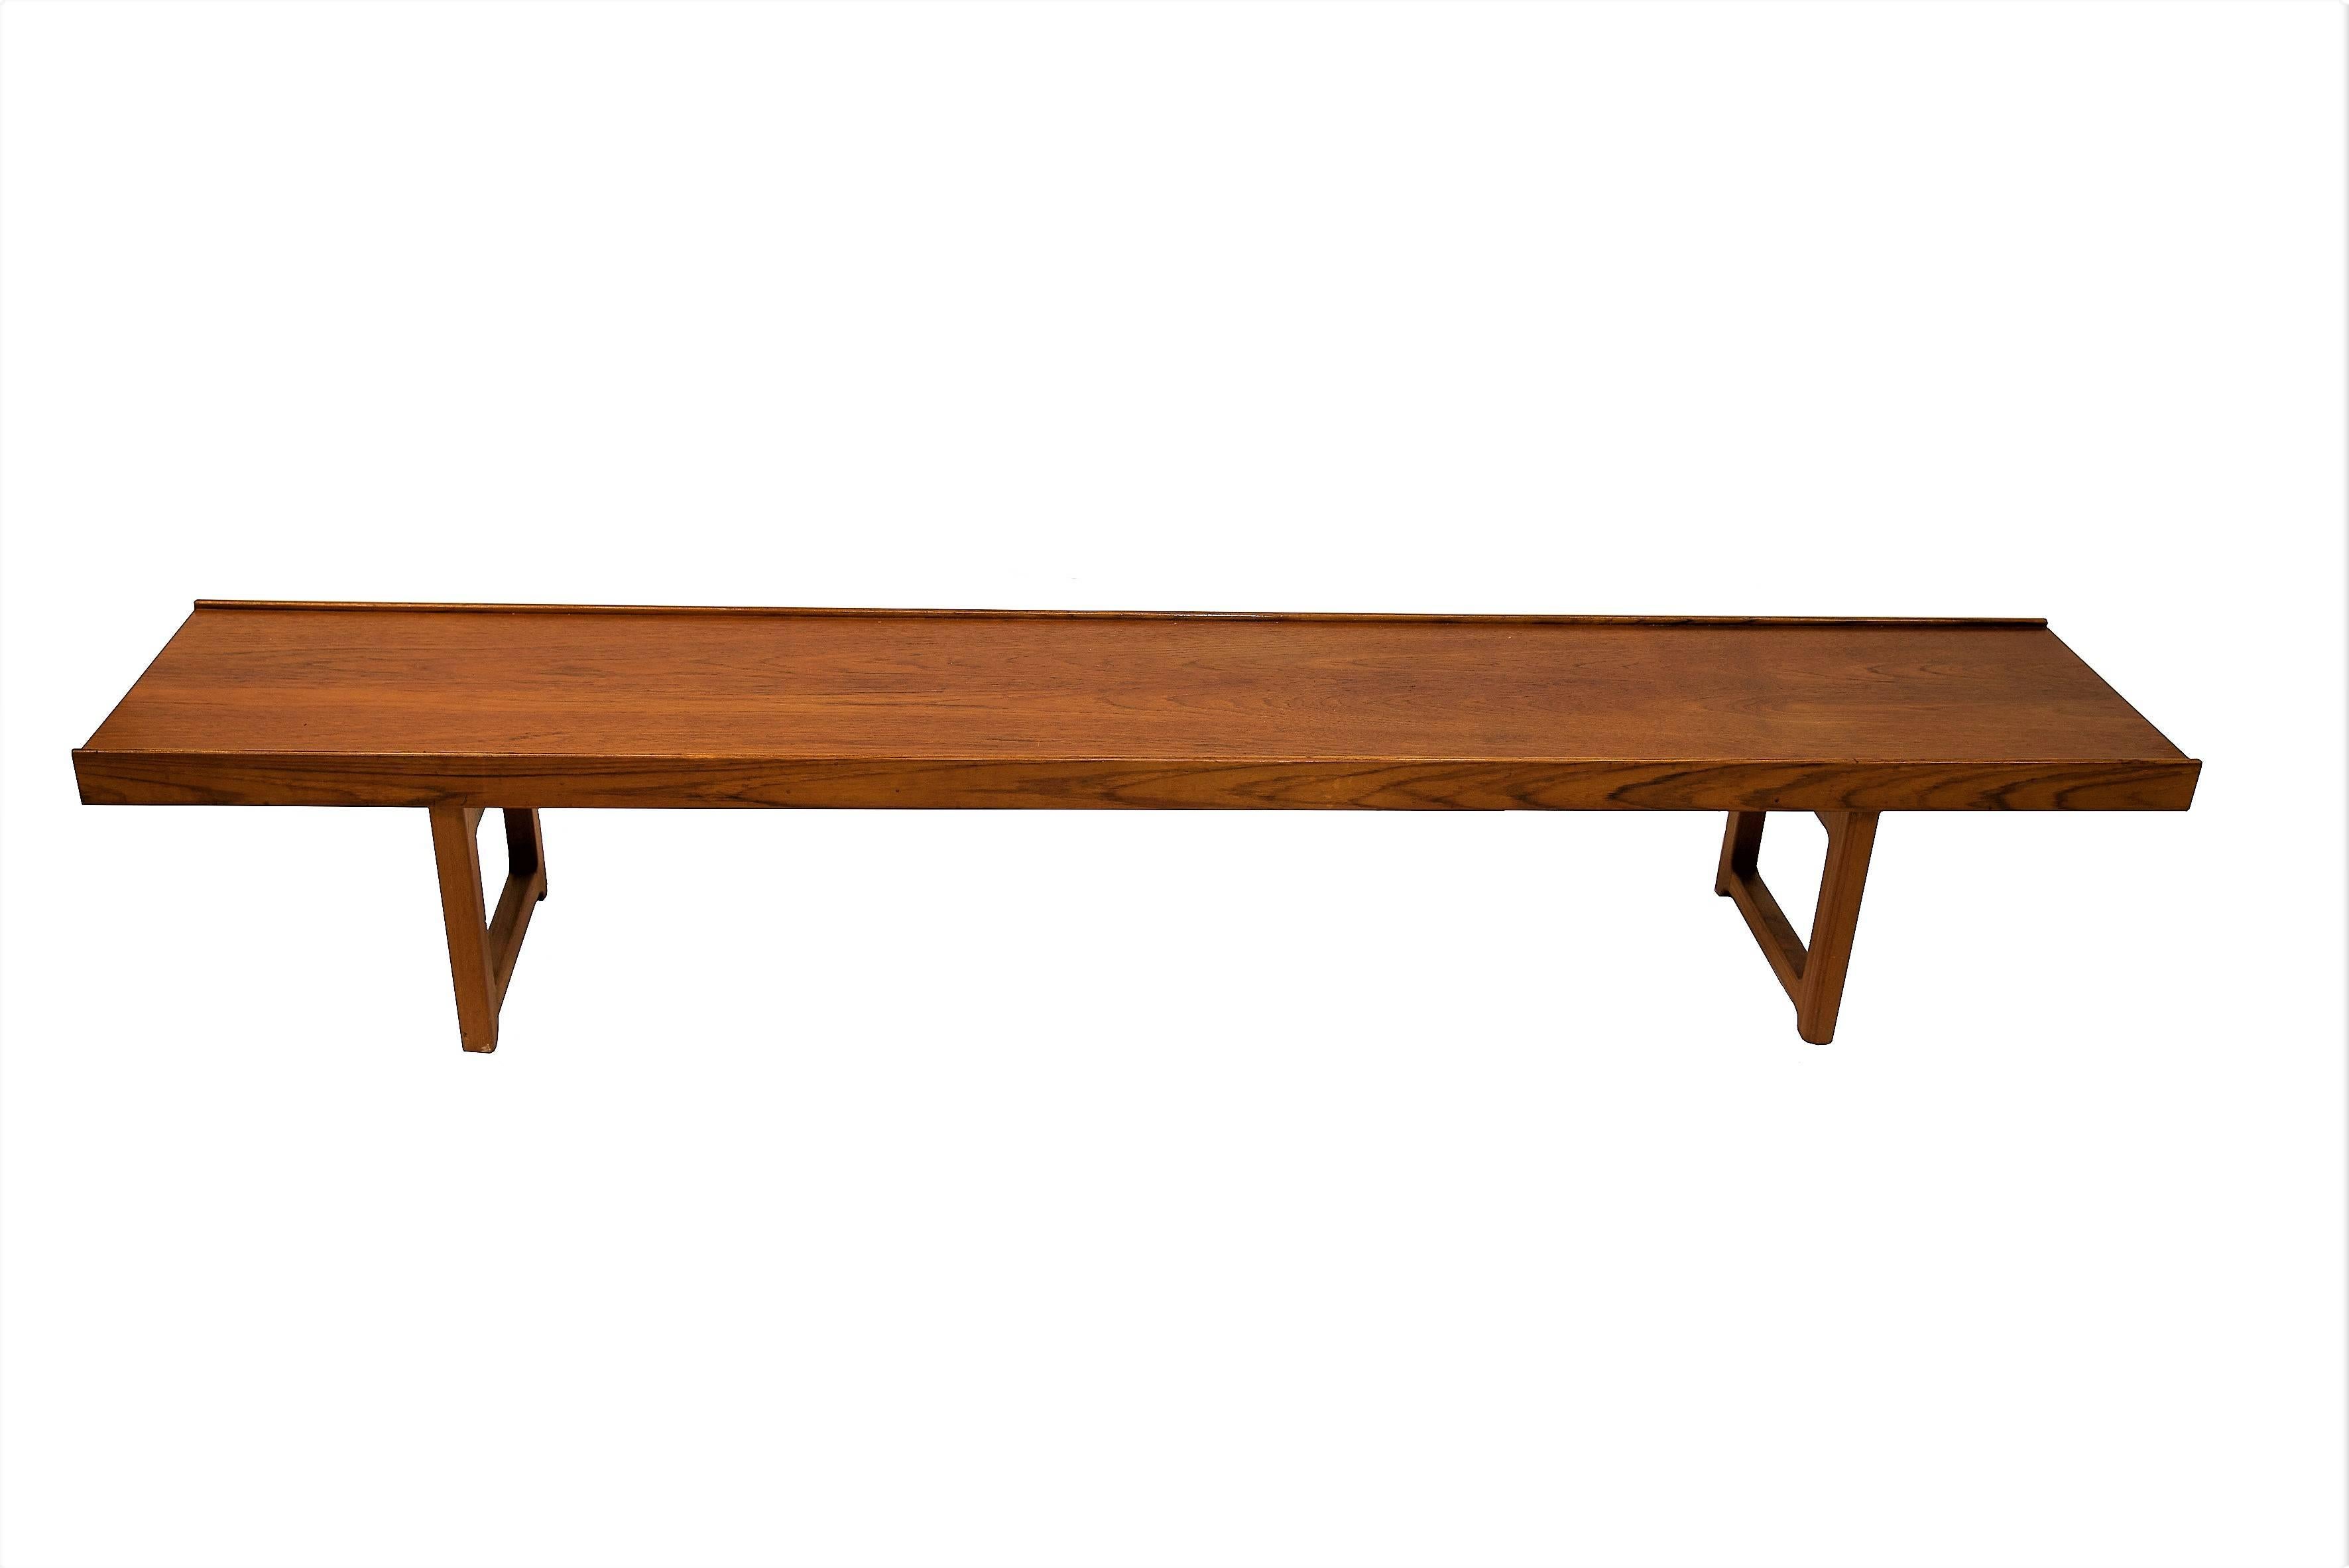 This Krobo bench in teak by Torbjørn Afdal was produced circa 1960s. Torbjørn Afdal was one of the leading designers at Bruksbo Tegnekontorer and in Scandinavia. Flower case to be bought separately if preferred.

Torbjørn Afdal's furniture was